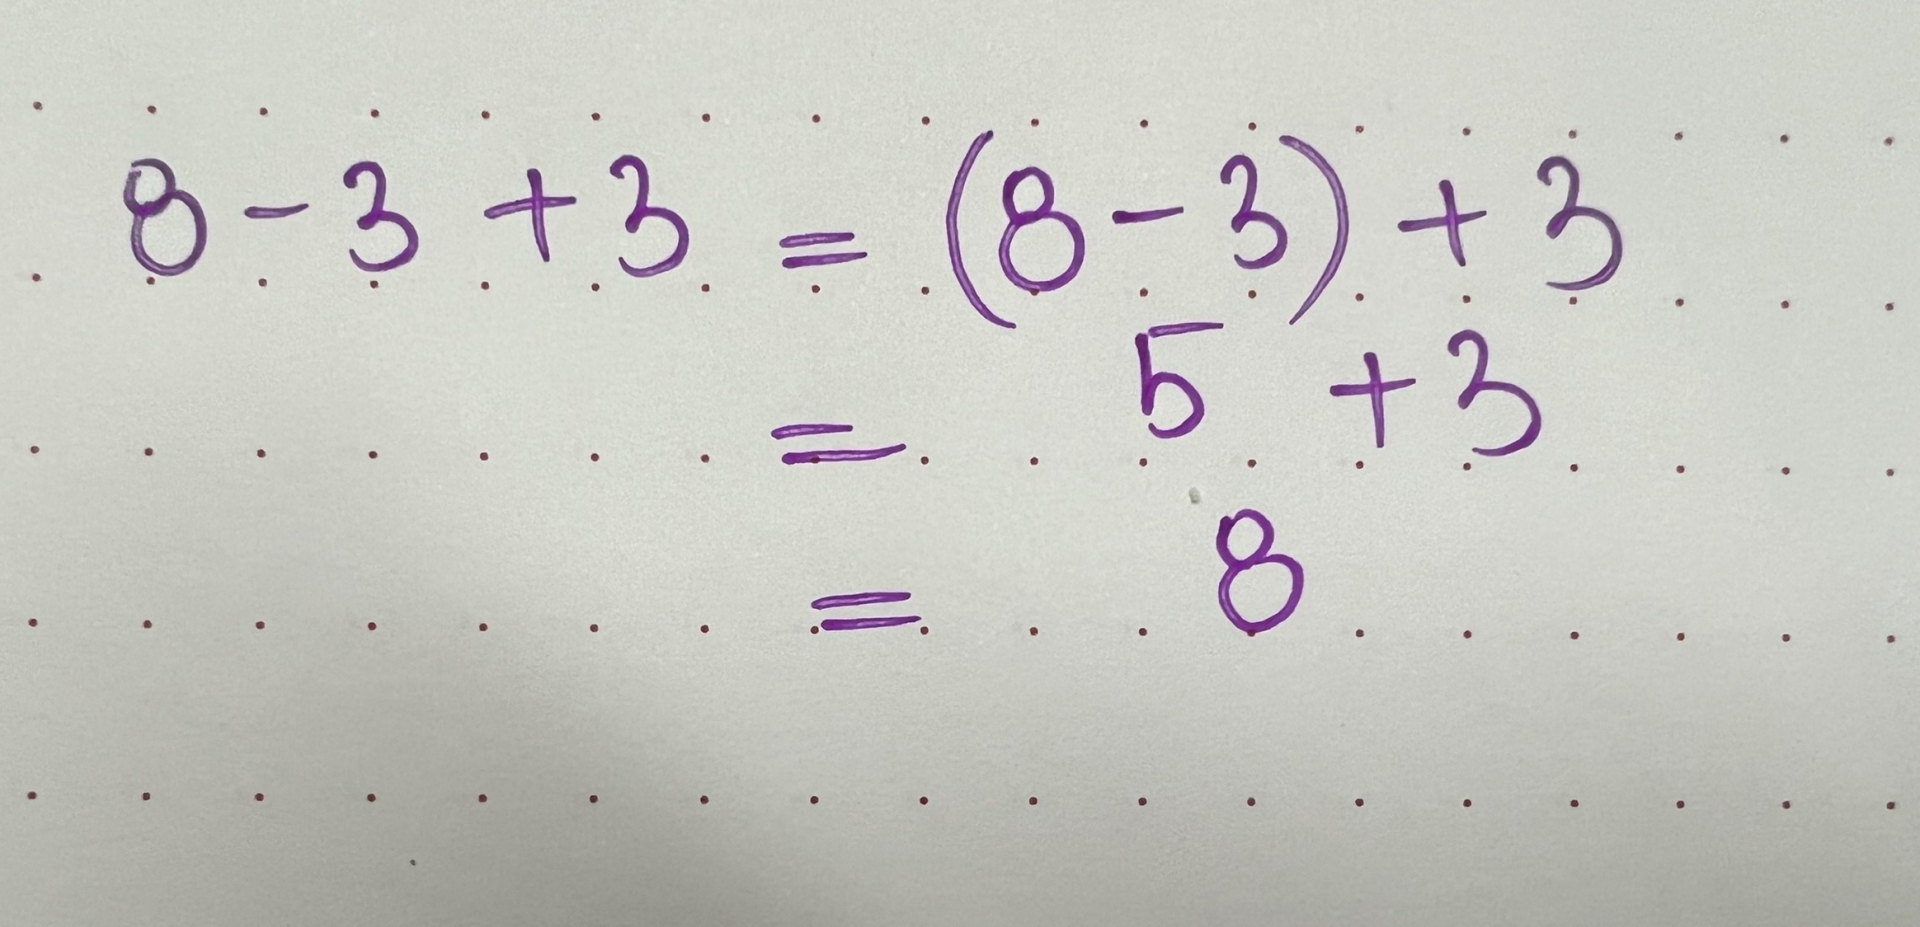 Kết quả đúng của phép toán 8 - 3 + 3 bằng 8